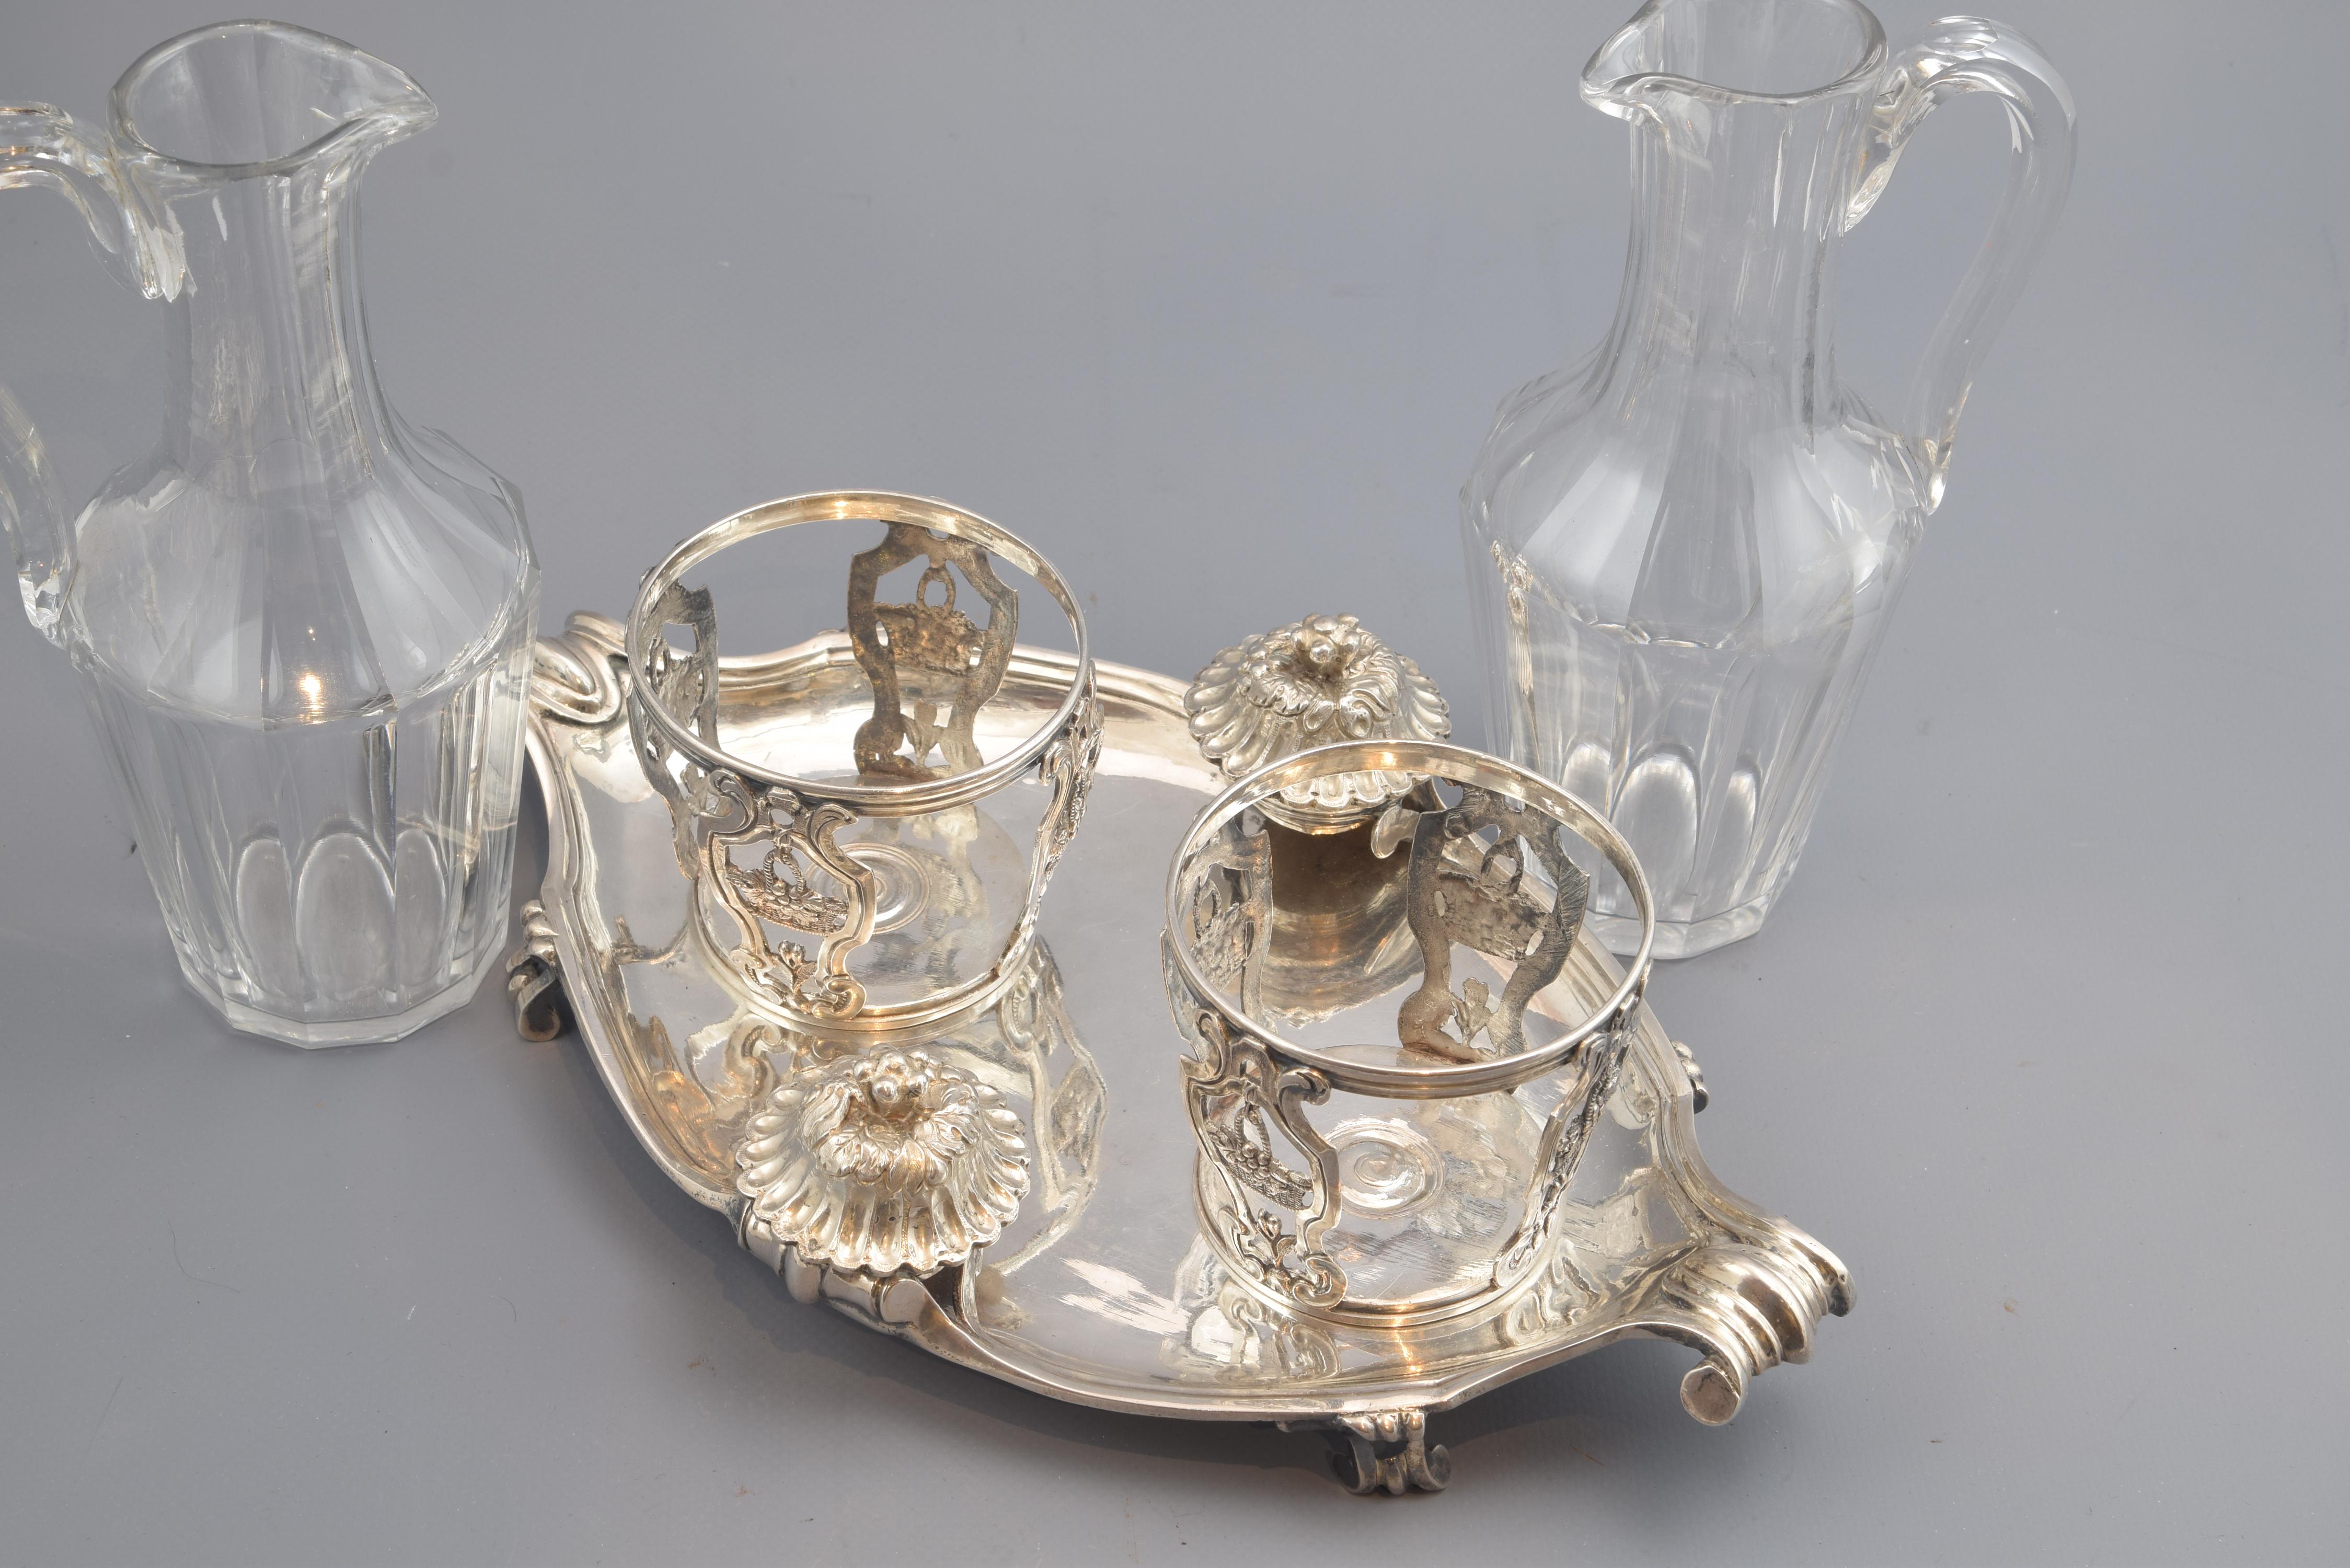 Cruet Set, Silver, Glass, René-Pierre Ferrier, Paris, France, 1775 For Sale 3